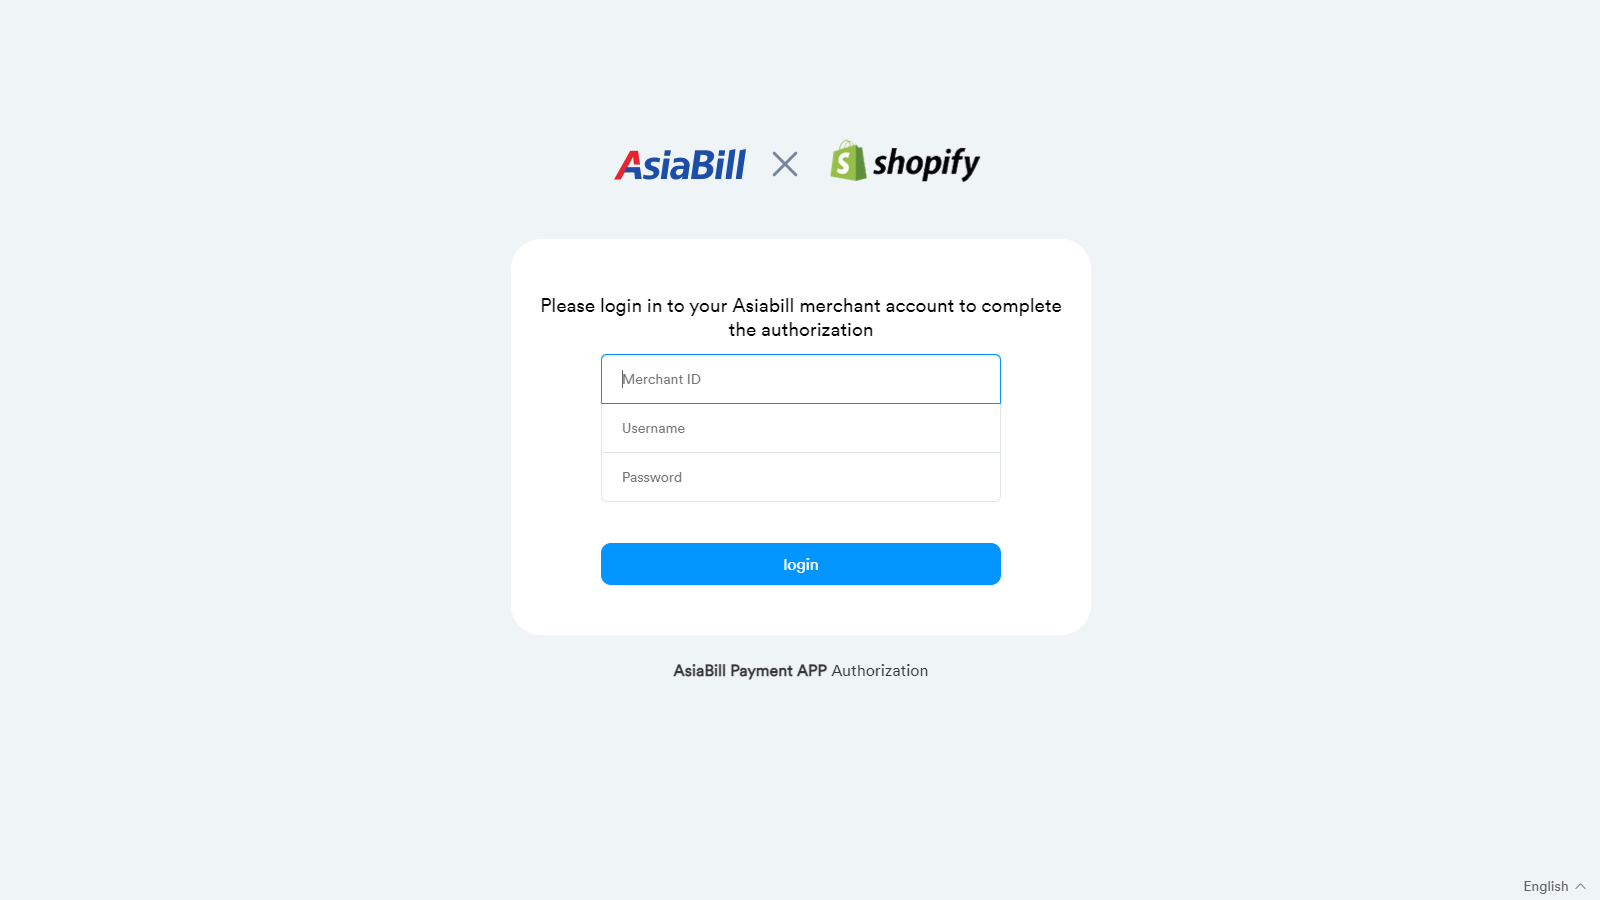 登录到您的Asiabill商户门户以完成授权